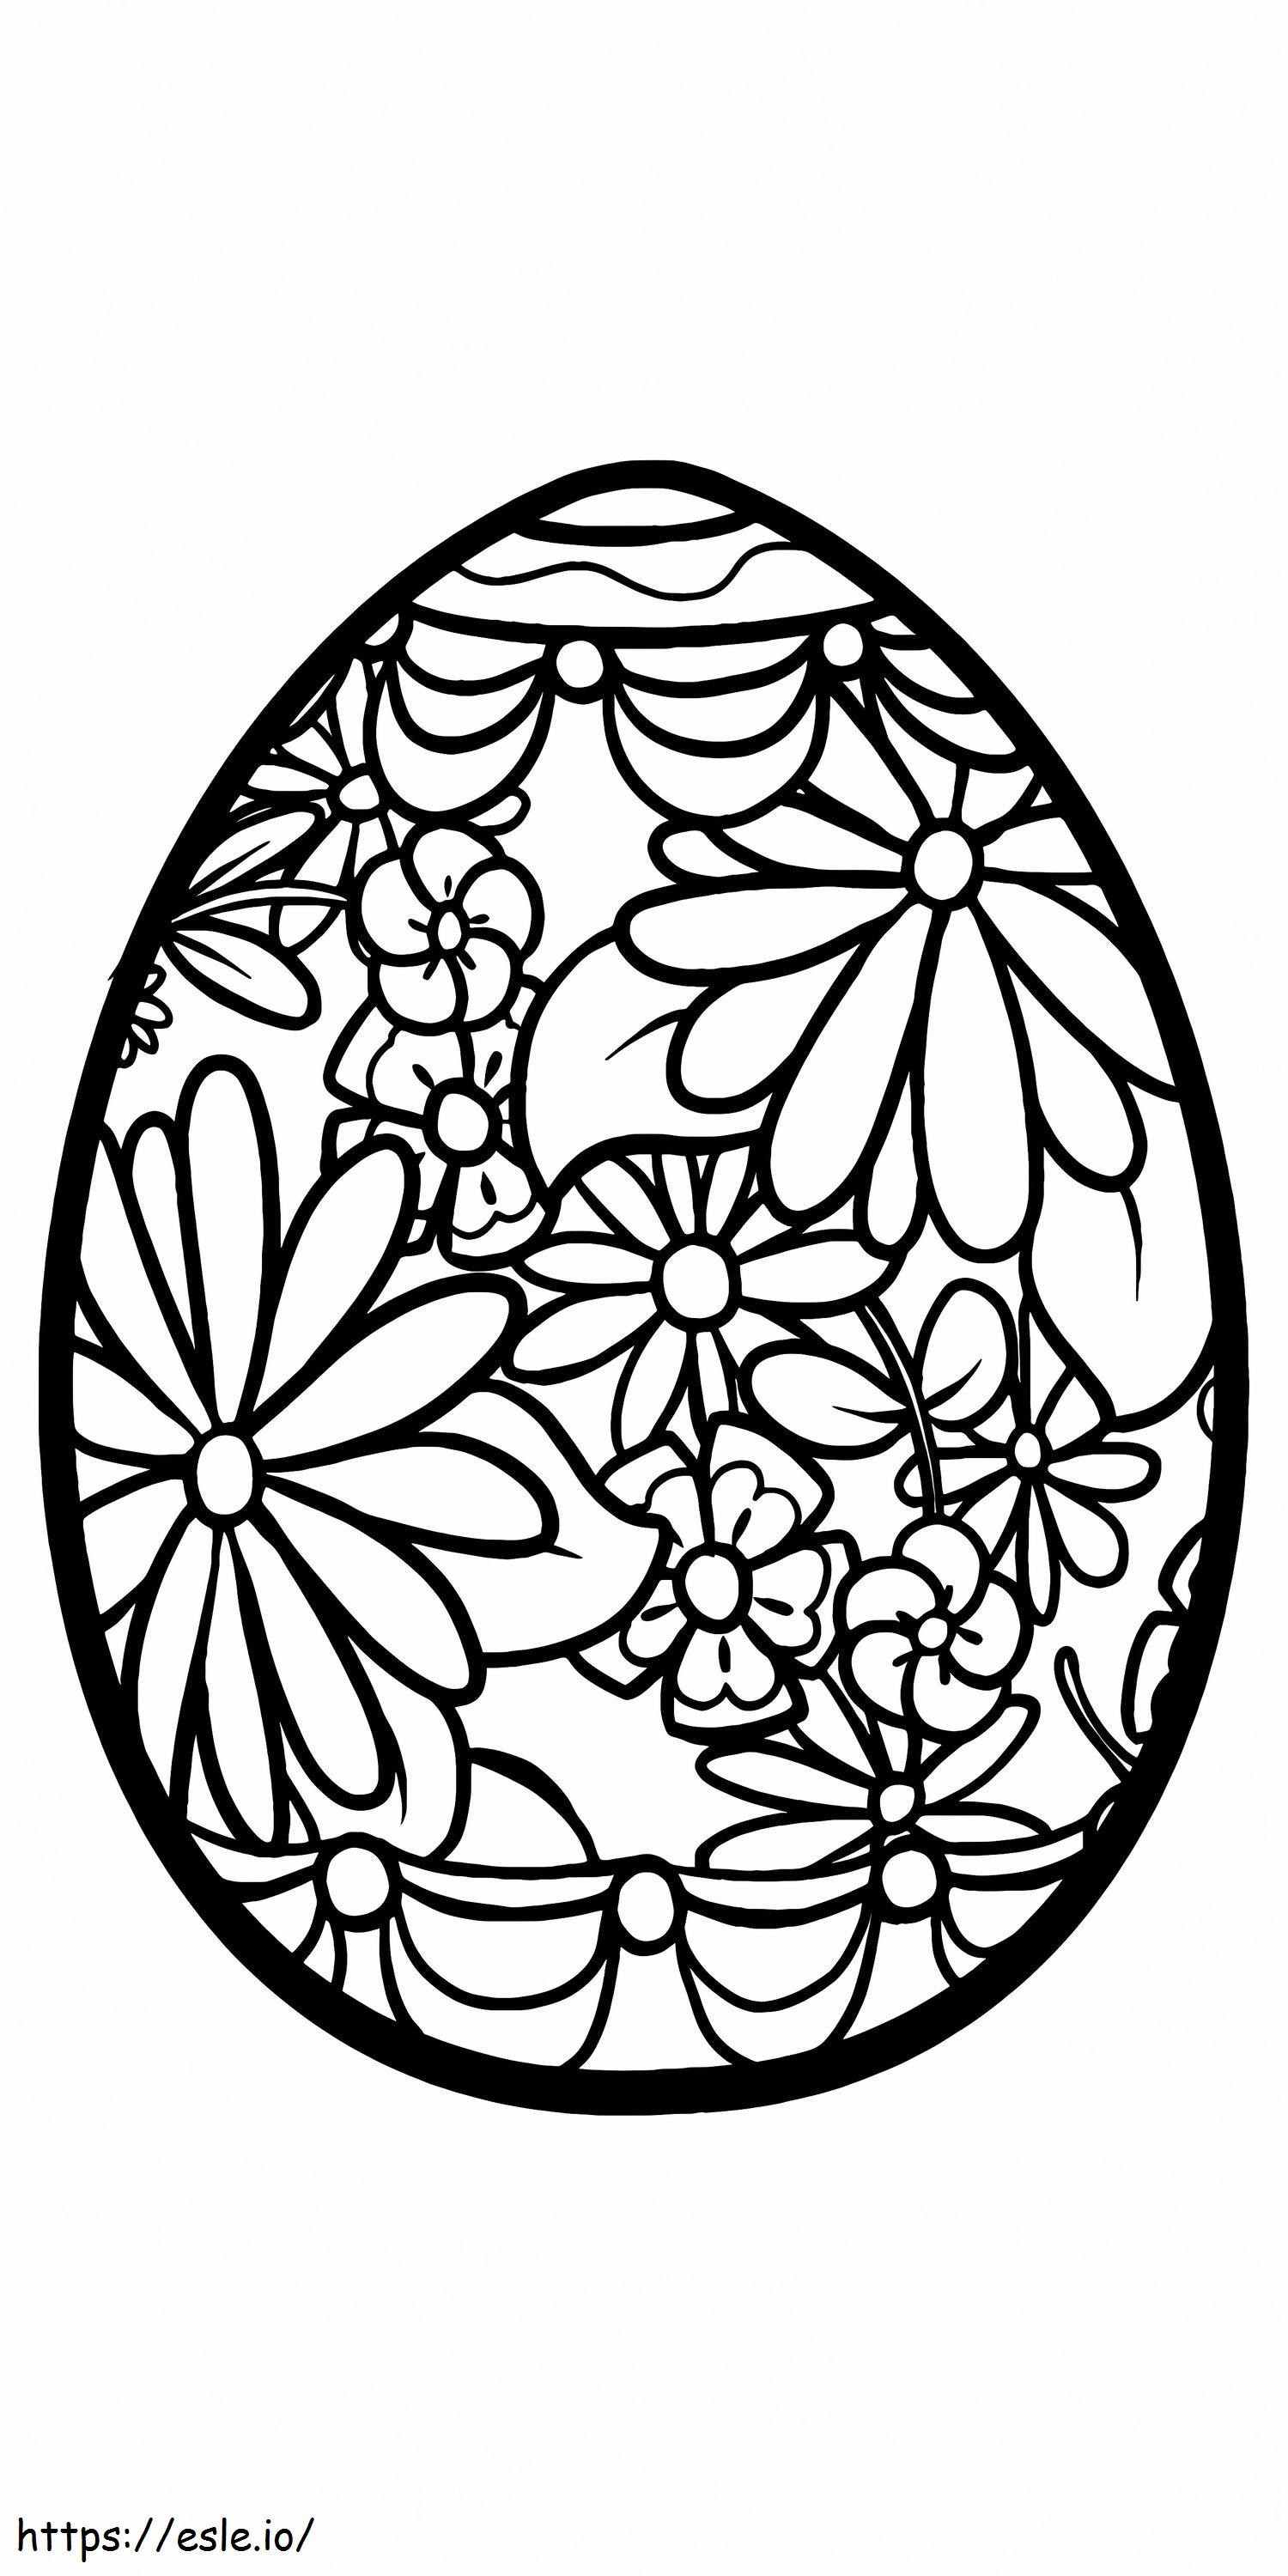 Osterei-Blumenmuster zum Ausdrucken 9 ausmalbilder